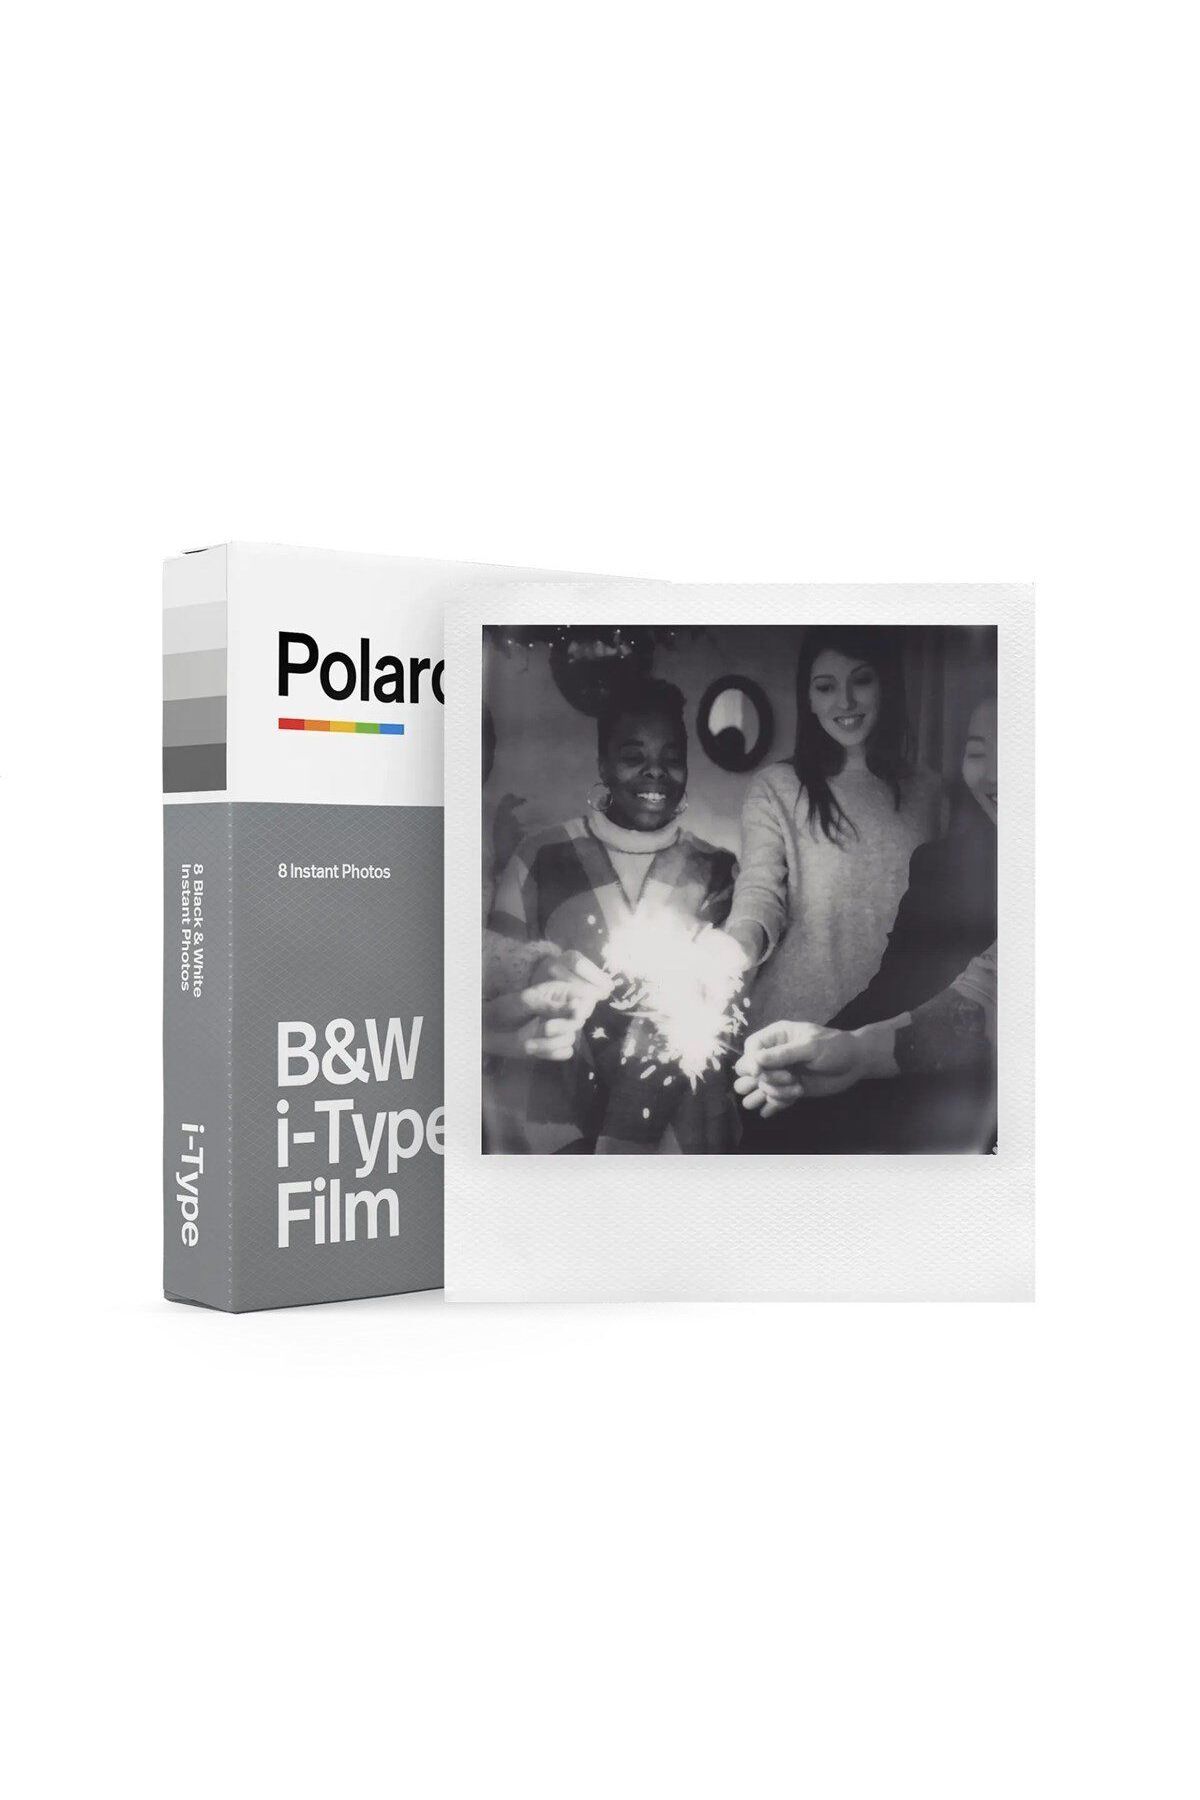 Polaroid B&W Film for i-Type